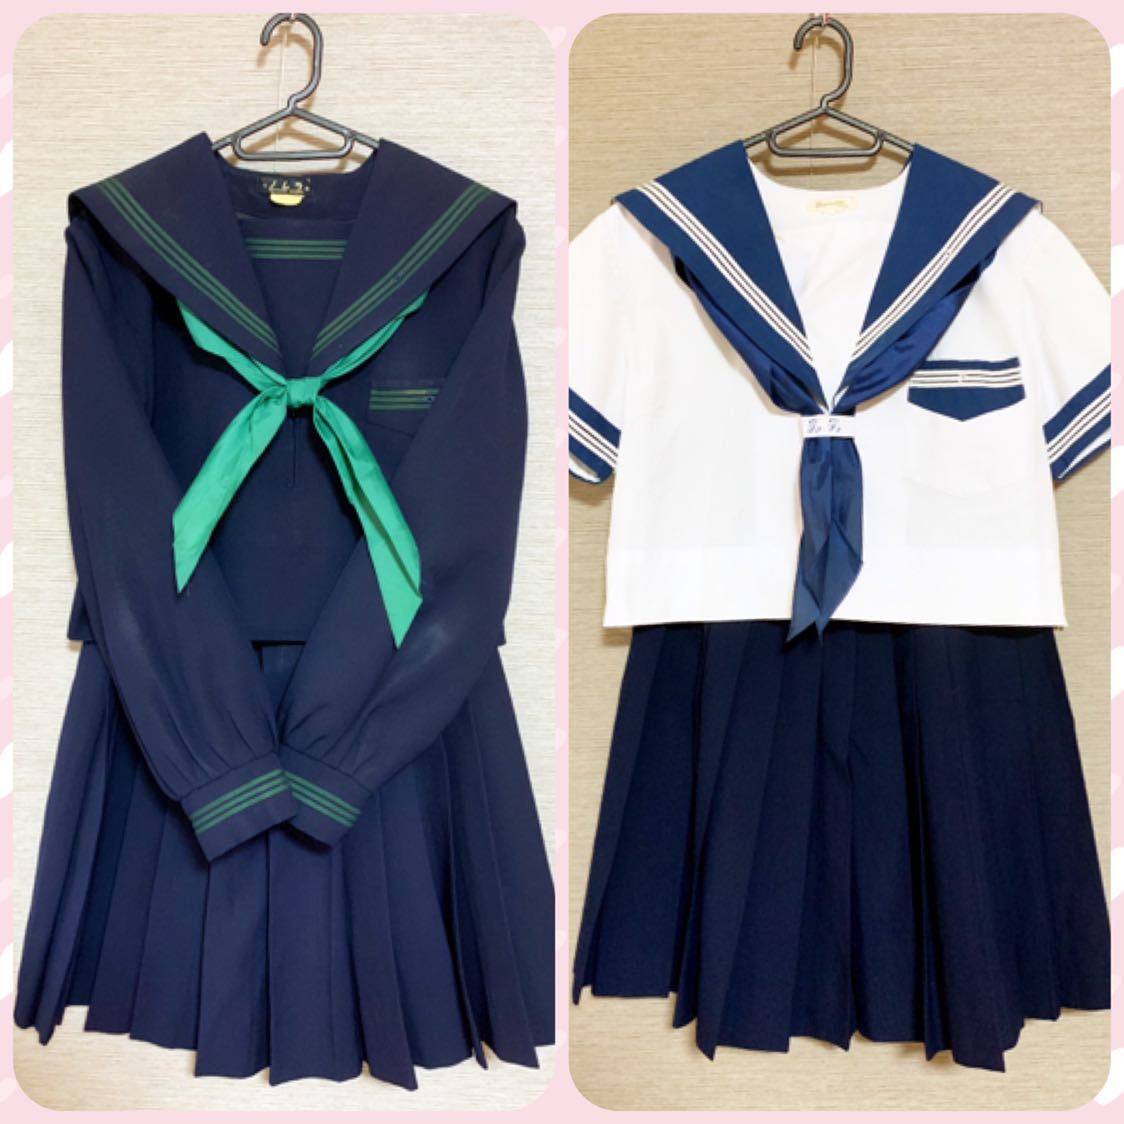 大阪府 大阪成蹊女子高校の制服セット(旧型) 緑・青色のセーラー服